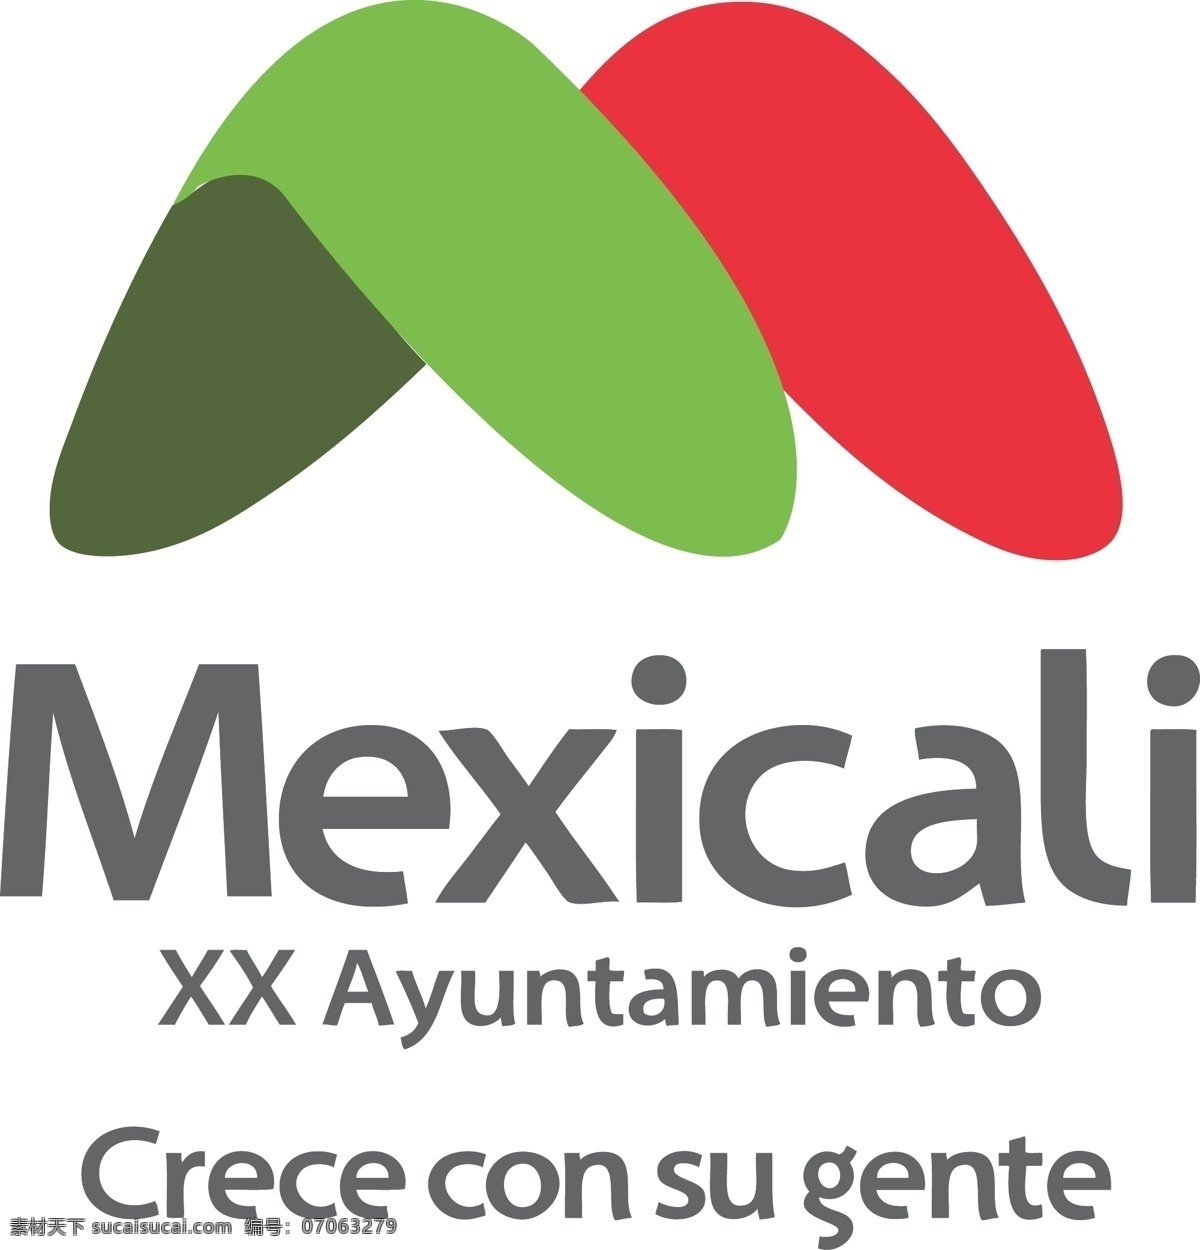 墨西卡利 xx 市 议会 标识 公司 免费 品牌 品牌标识 商标 矢量标志下载 免费矢量标识 矢量 psd源文件 logo设计